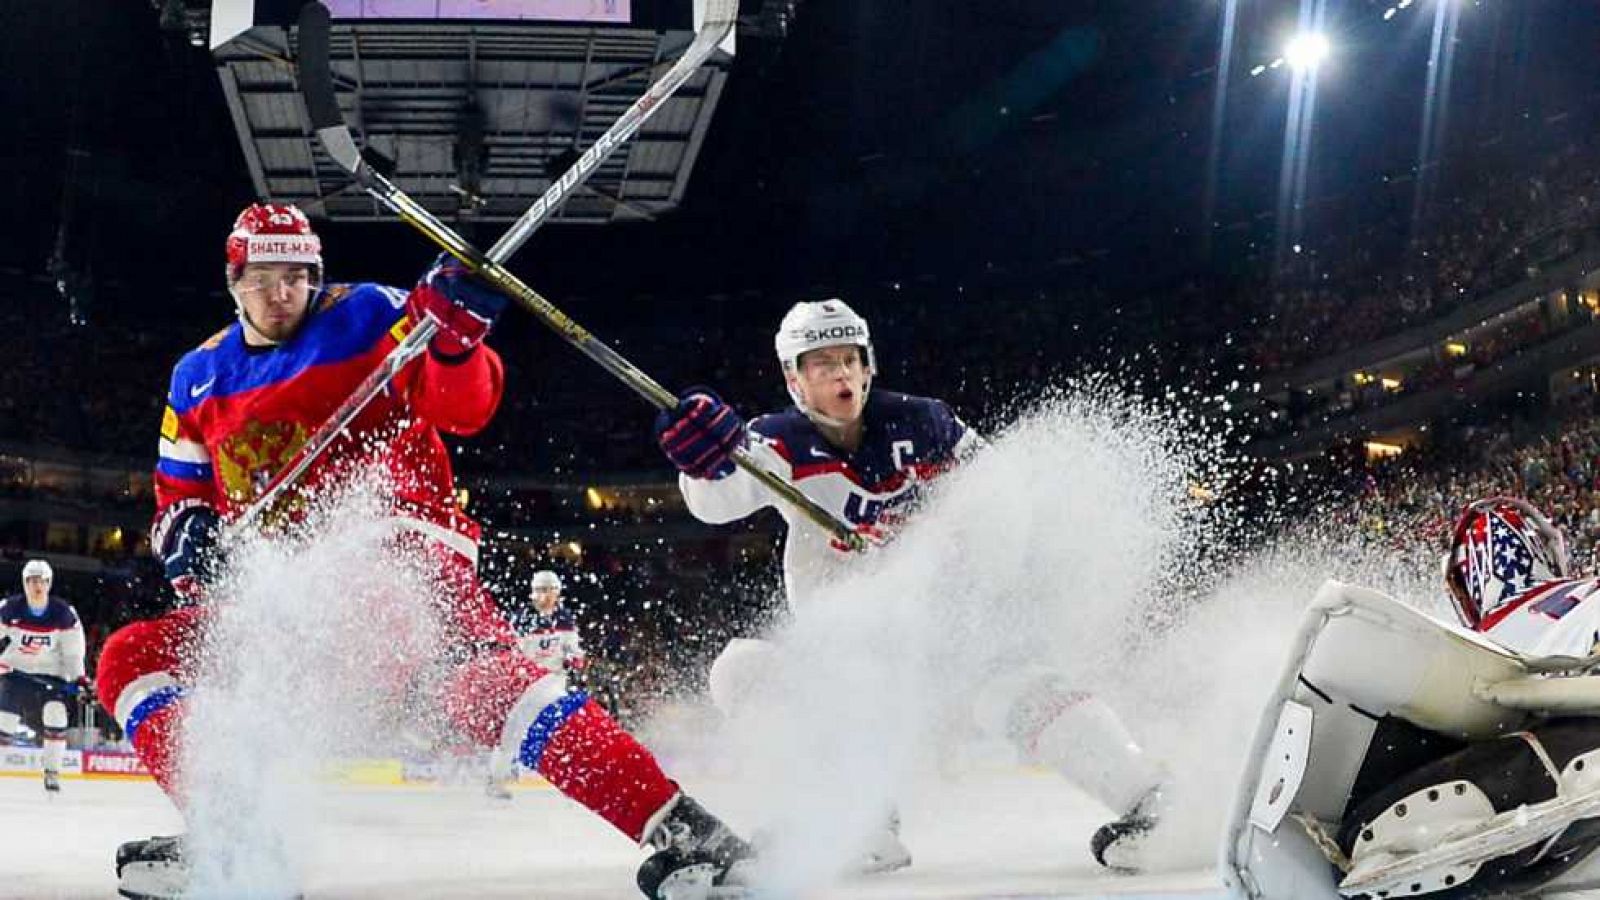 Hockey Hielo - Campeonato del Mundo Masculino 2017: Rusia-EE.UU.